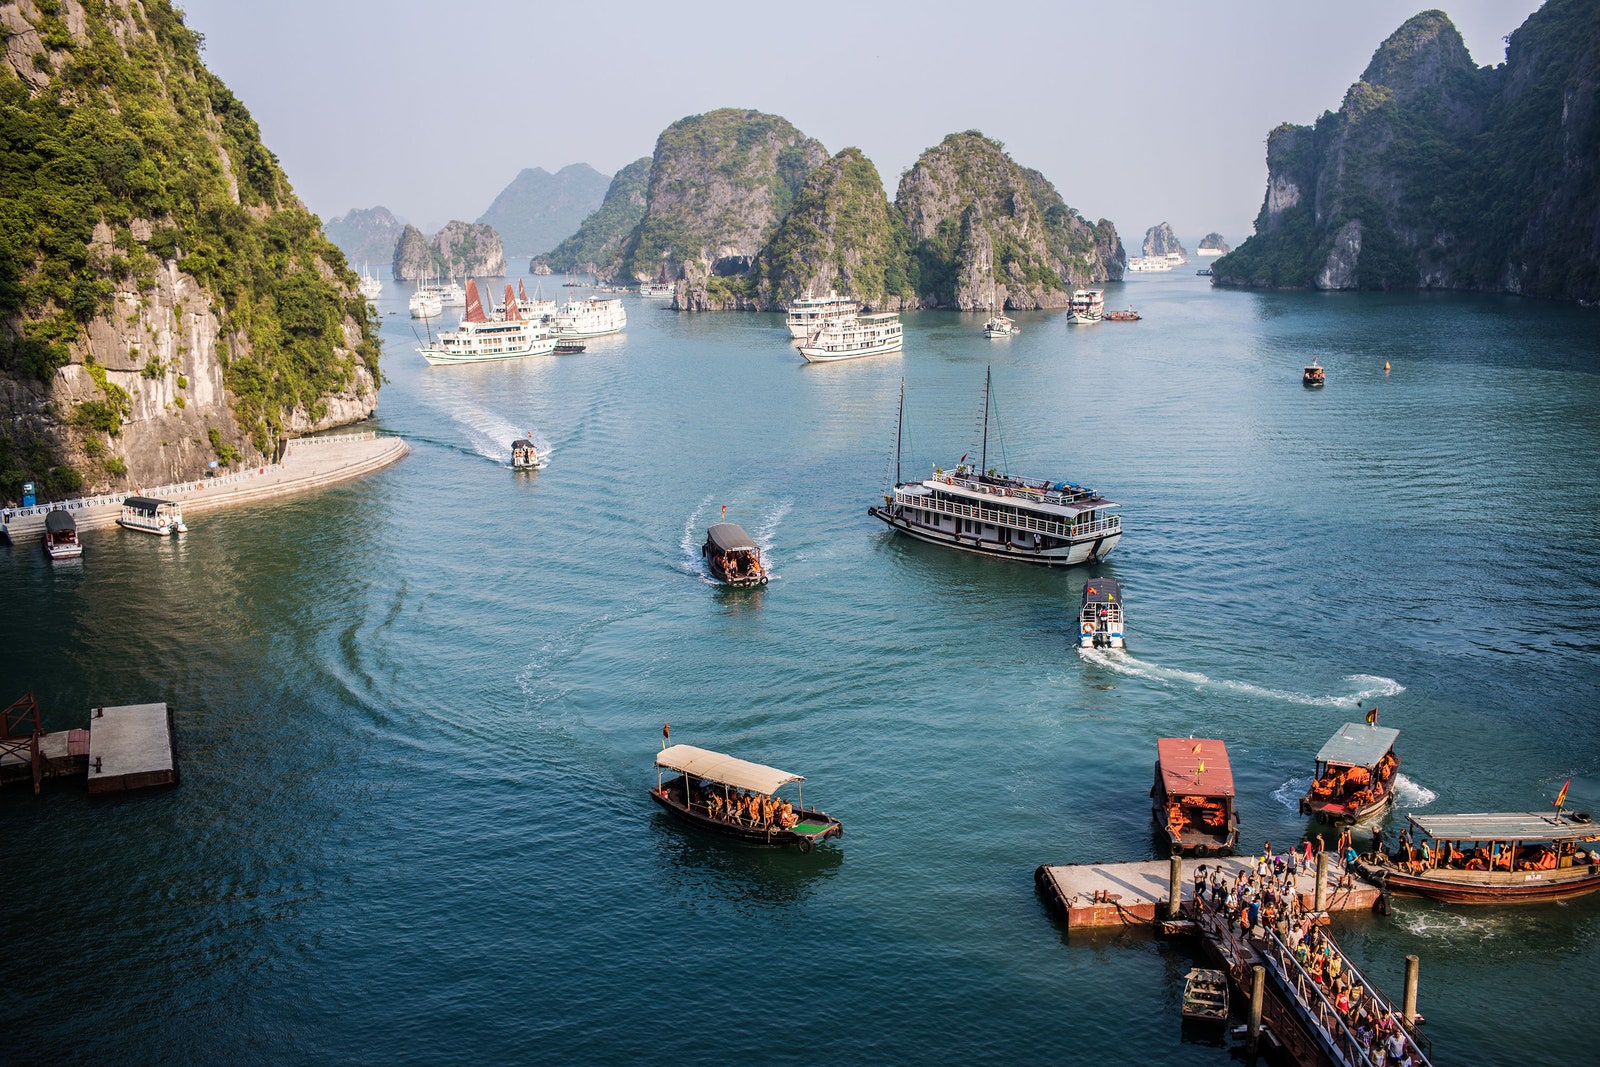 Báo quốc tế gợi ý thời gian đẹp nhất để ghé thăm Việt Nam - Ảnh 1.